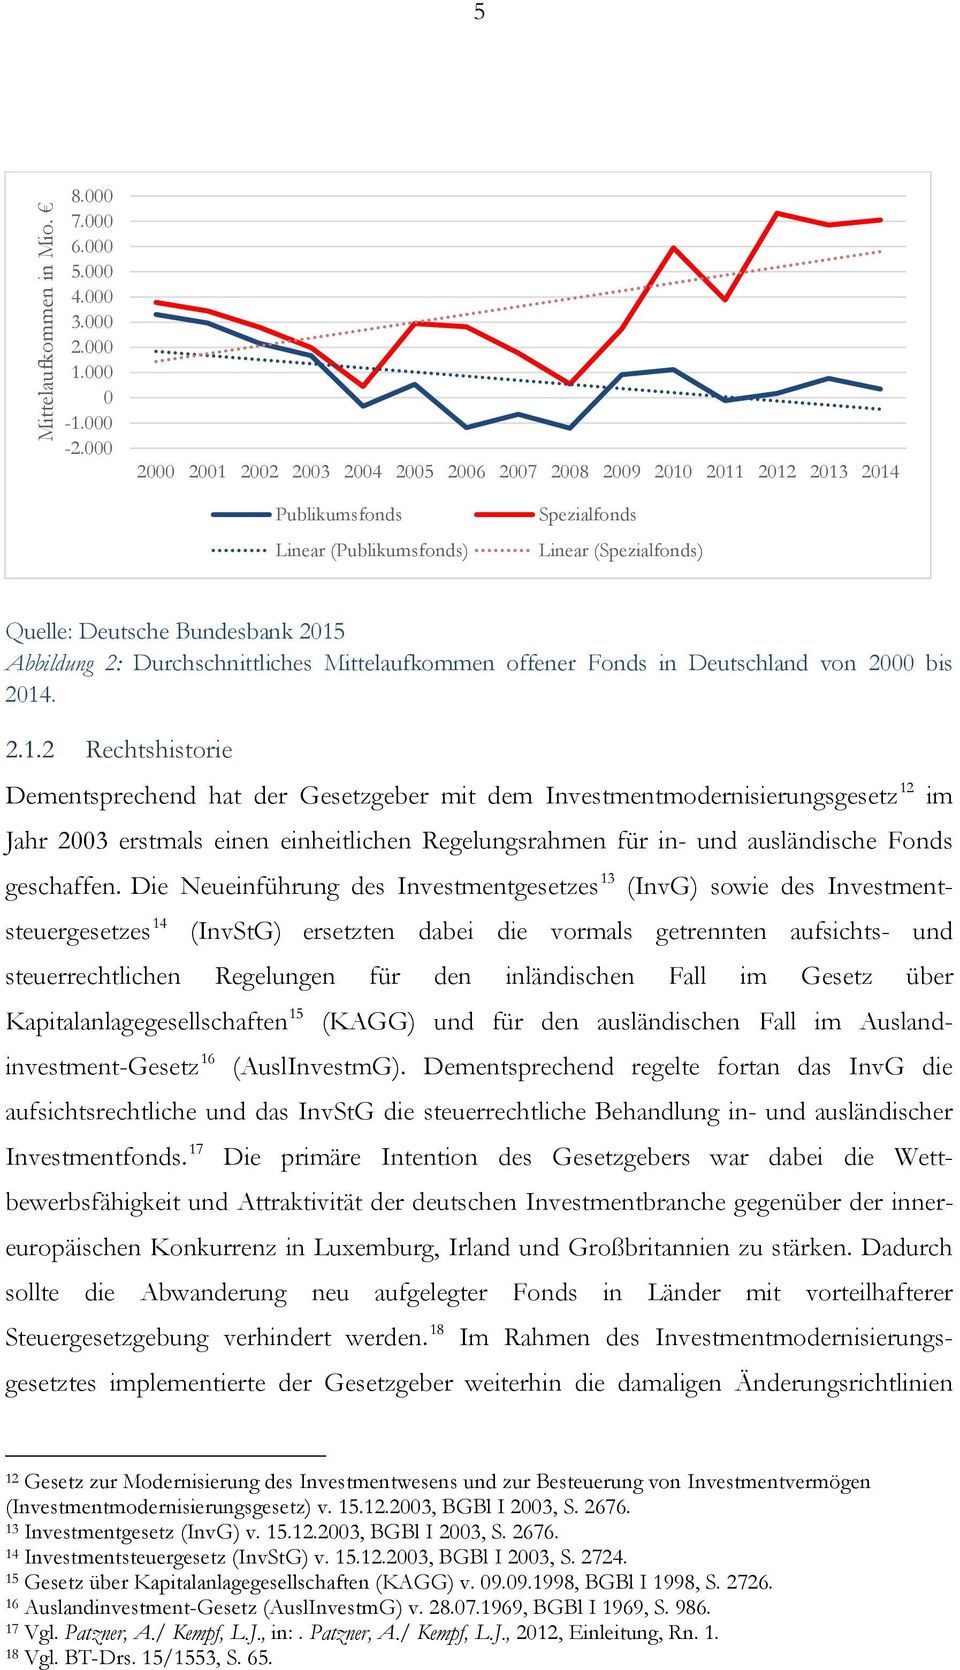 Durchschnittliches Mittelaufkommen offener Fonds in Deutschland von 2000 bis 2014